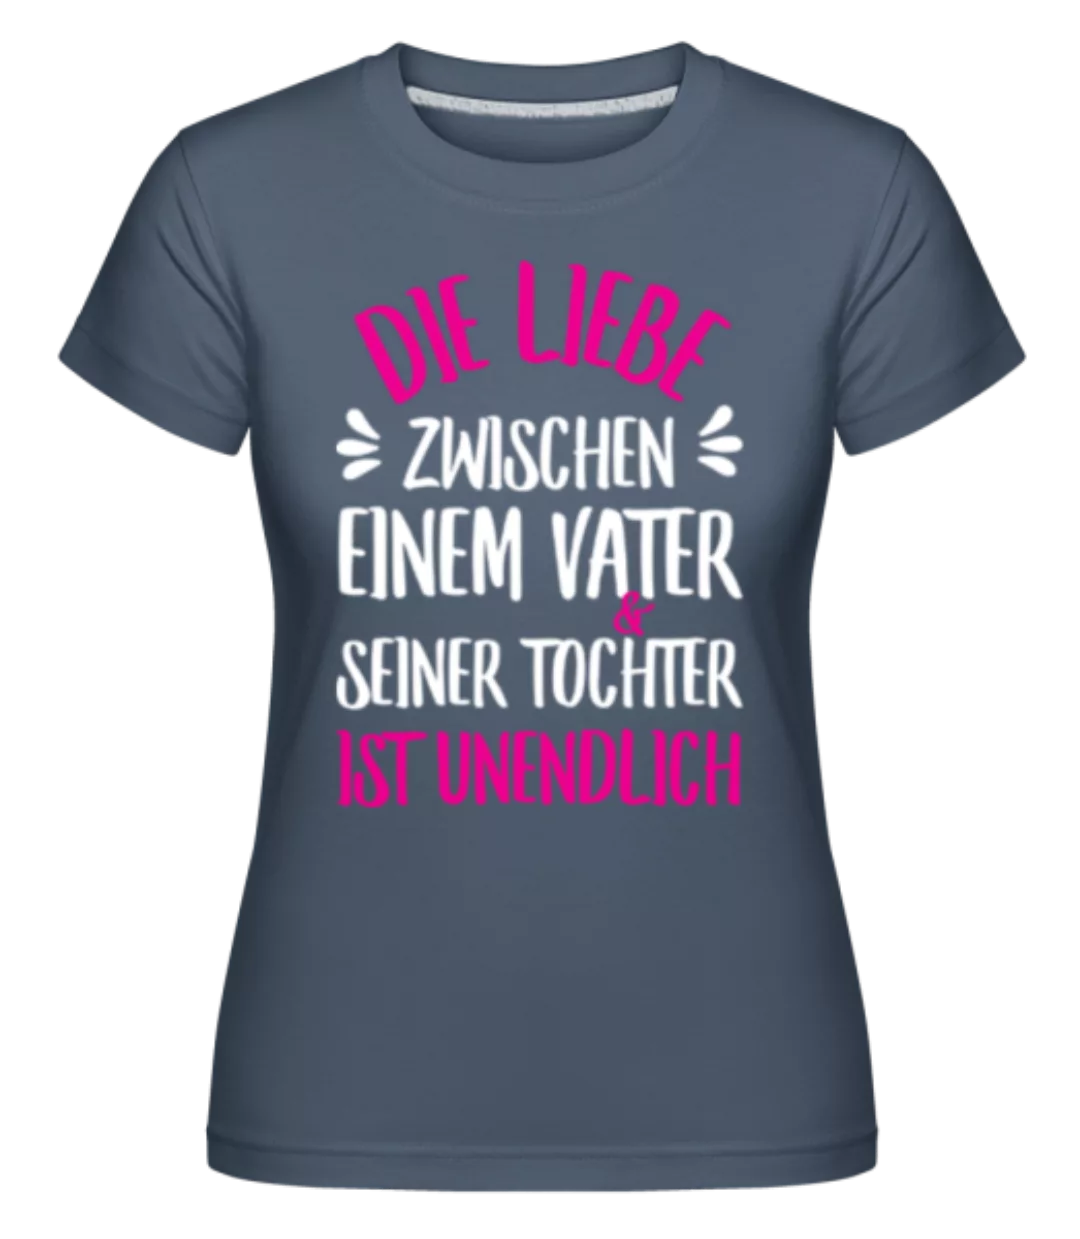 Liebe Zwischen Vater Tochter · Shirtinator Frauen T-Shirt günstig online kaufen